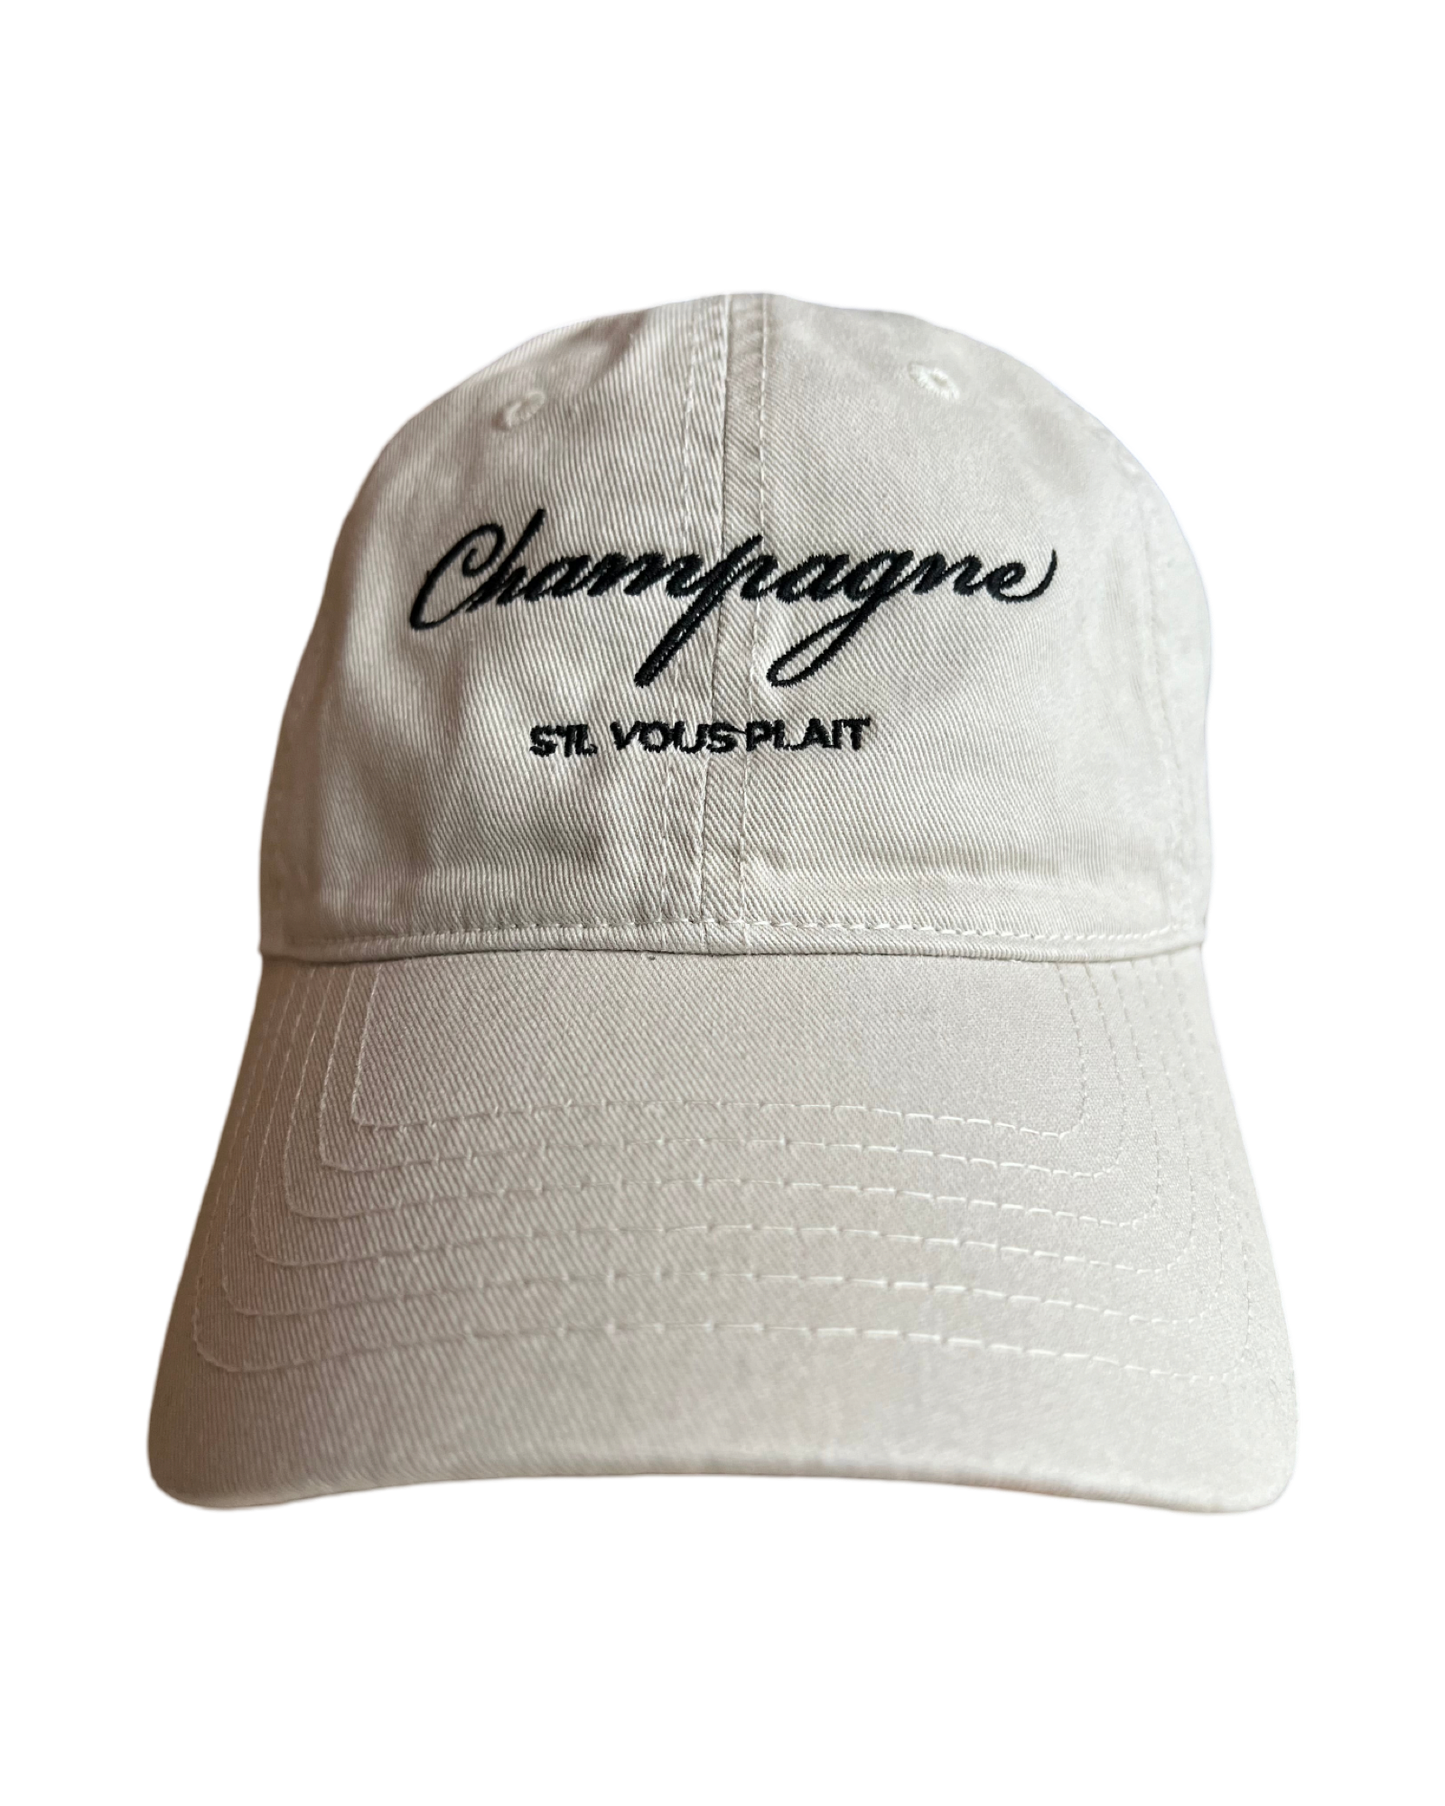 Champagne cap